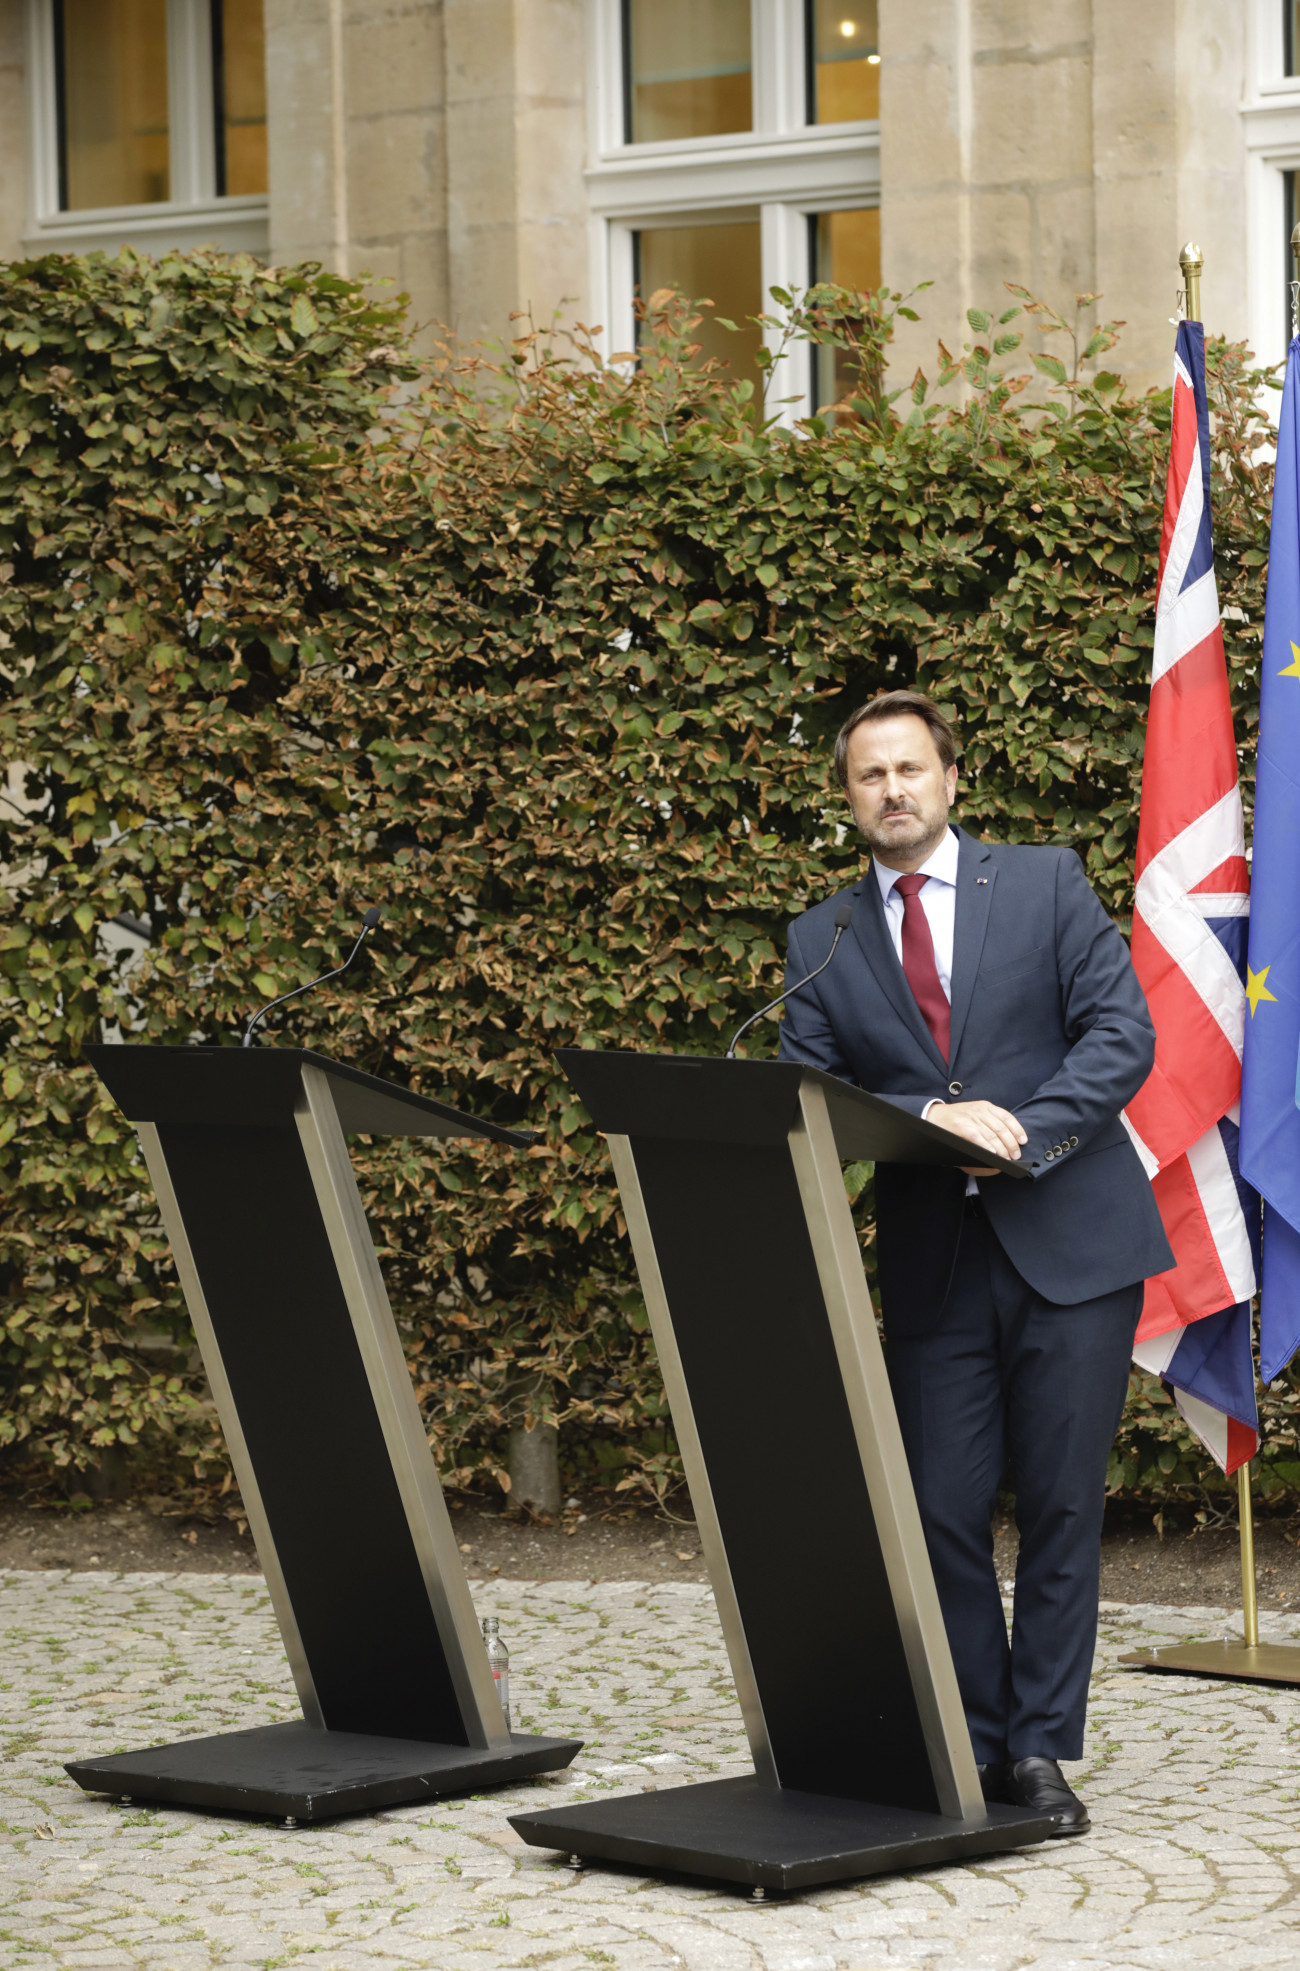 Xavier Bettel luxemburgi miniszterelnök a Boris Johnson brit kormányfővel a brit EU-tagság megszűnéséről folytatott tárgyalásait követő sajtóértekezleten Luxembourgban 2019. szeptember 16-án. A másik, üresen maradt pulpitus Johnsoné lett volna, de ő a politikája ellen tiltakozó tüntők keltette hangzavarra hivatkozva nem vett részt a sajtó tájékoztatásán.
MTI/AP/Olivier Matthys